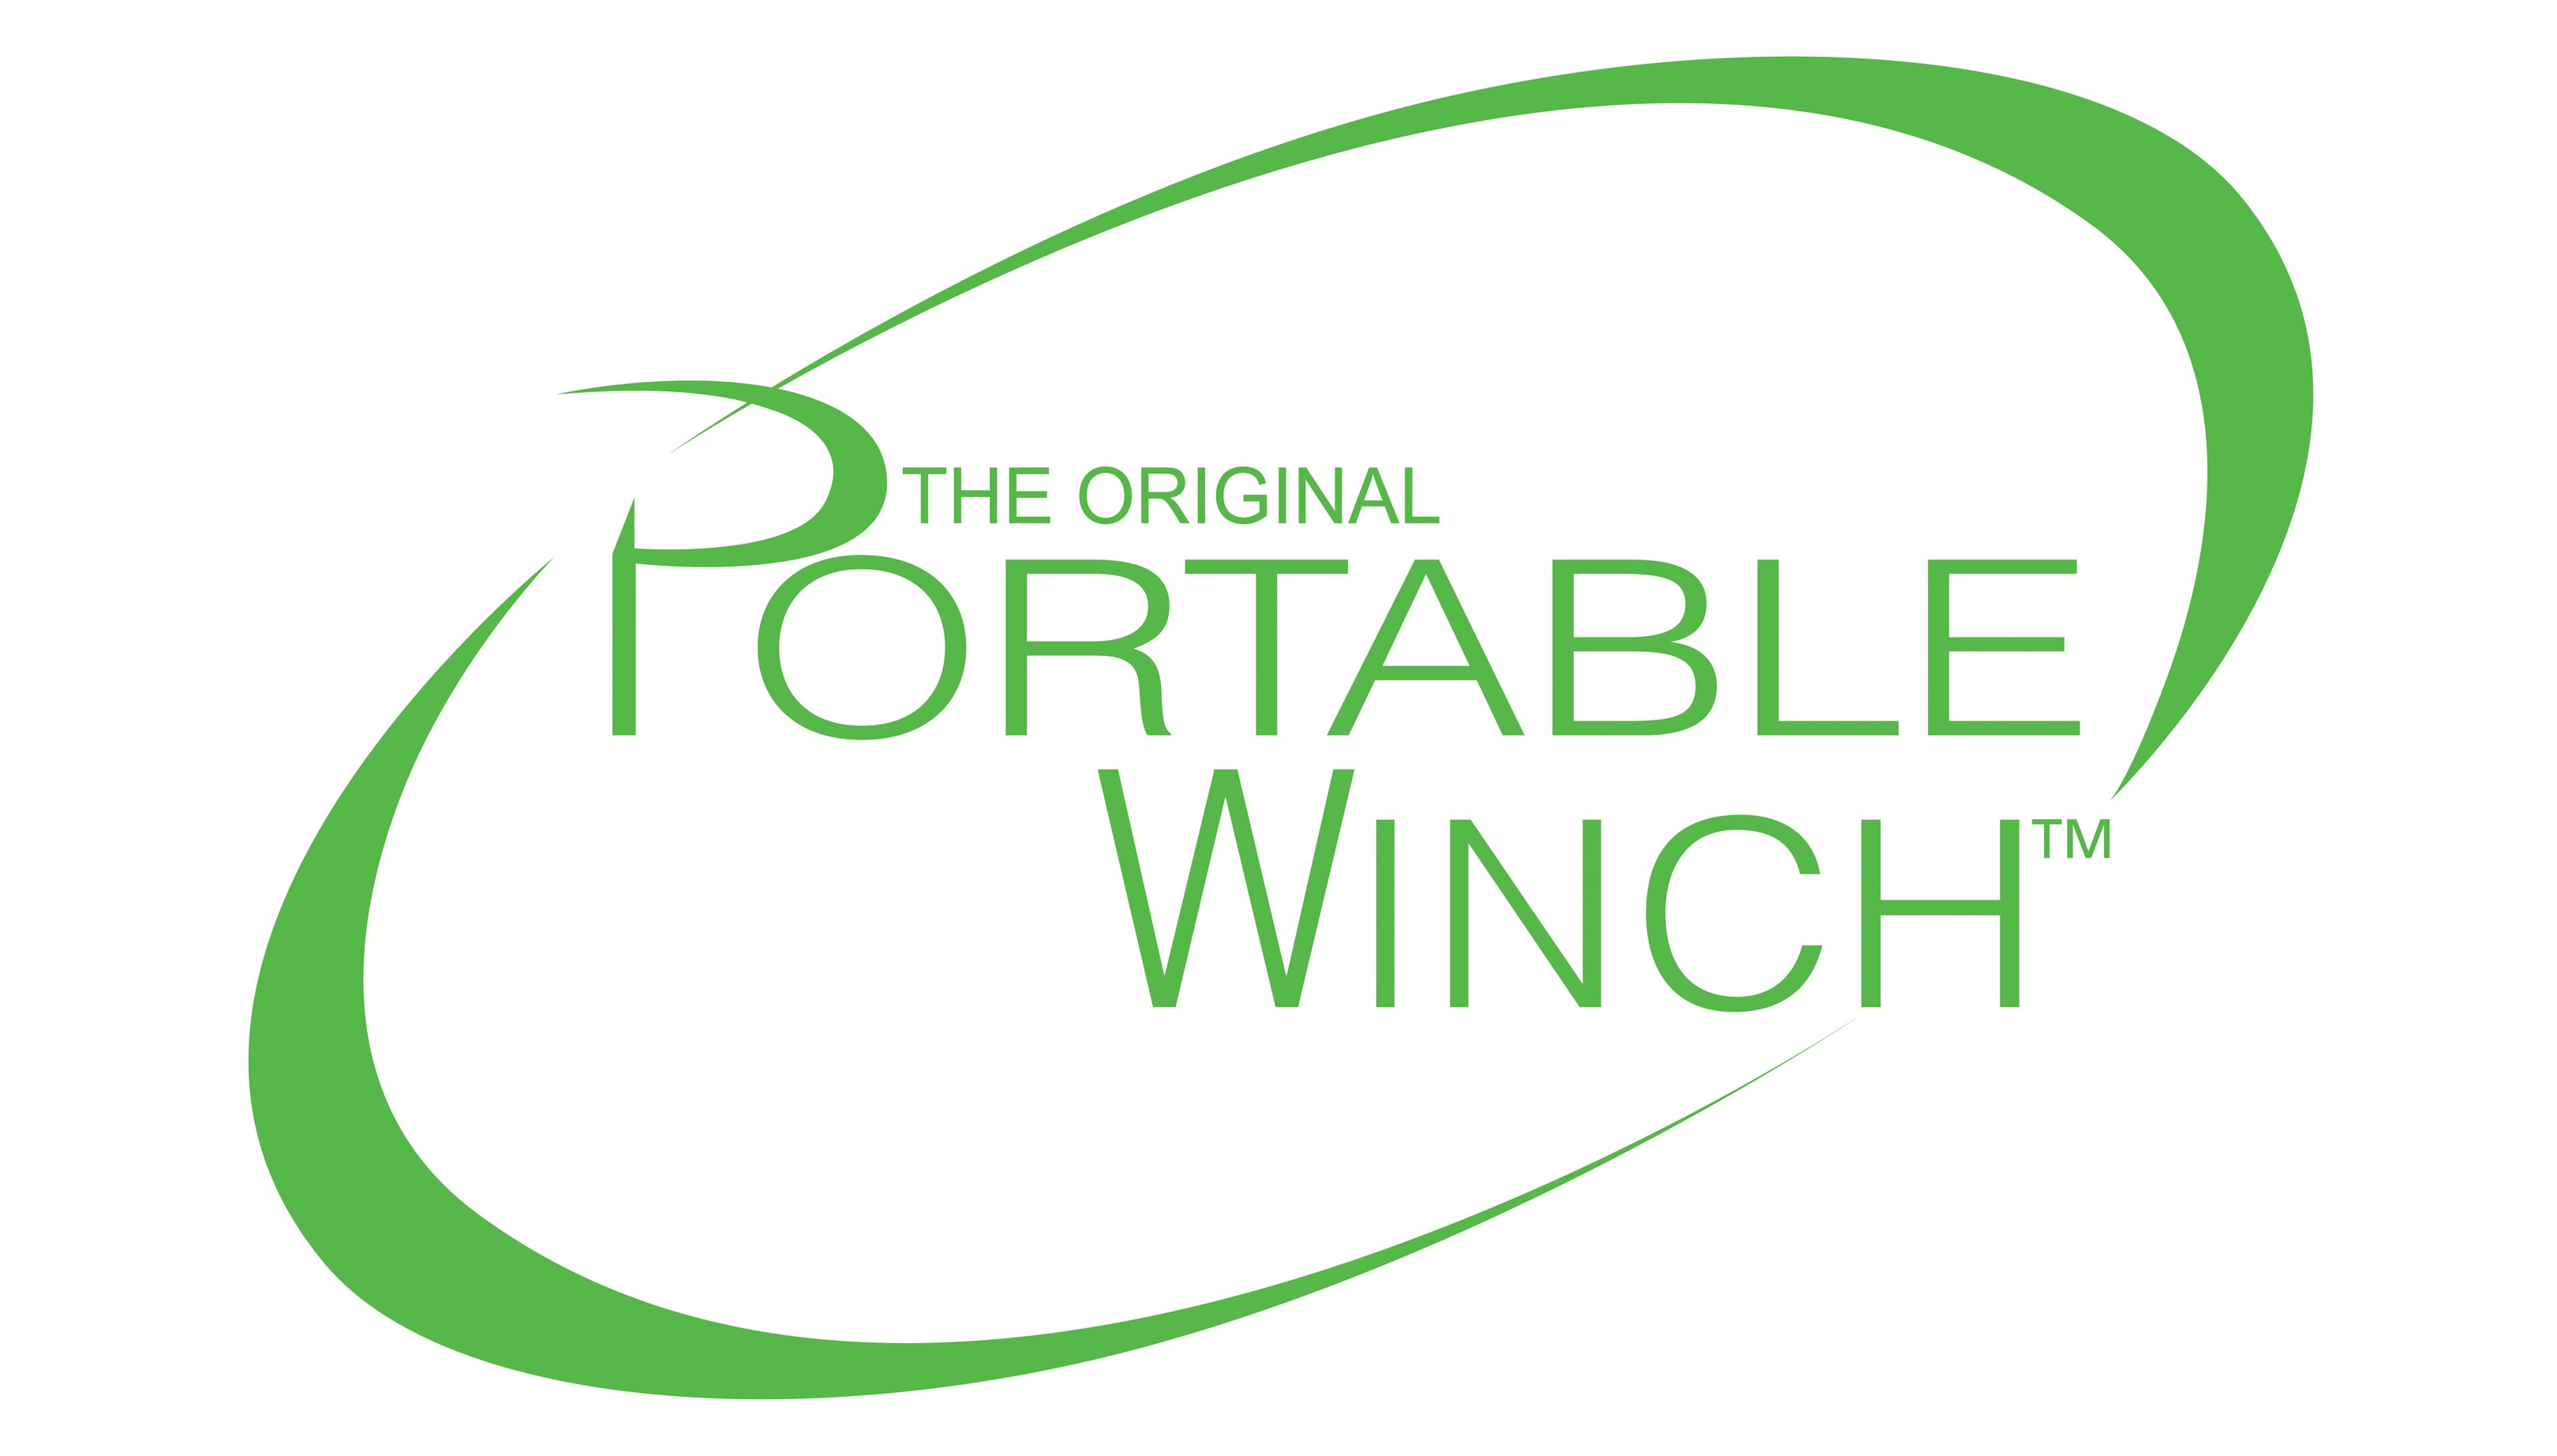 Portable Winch